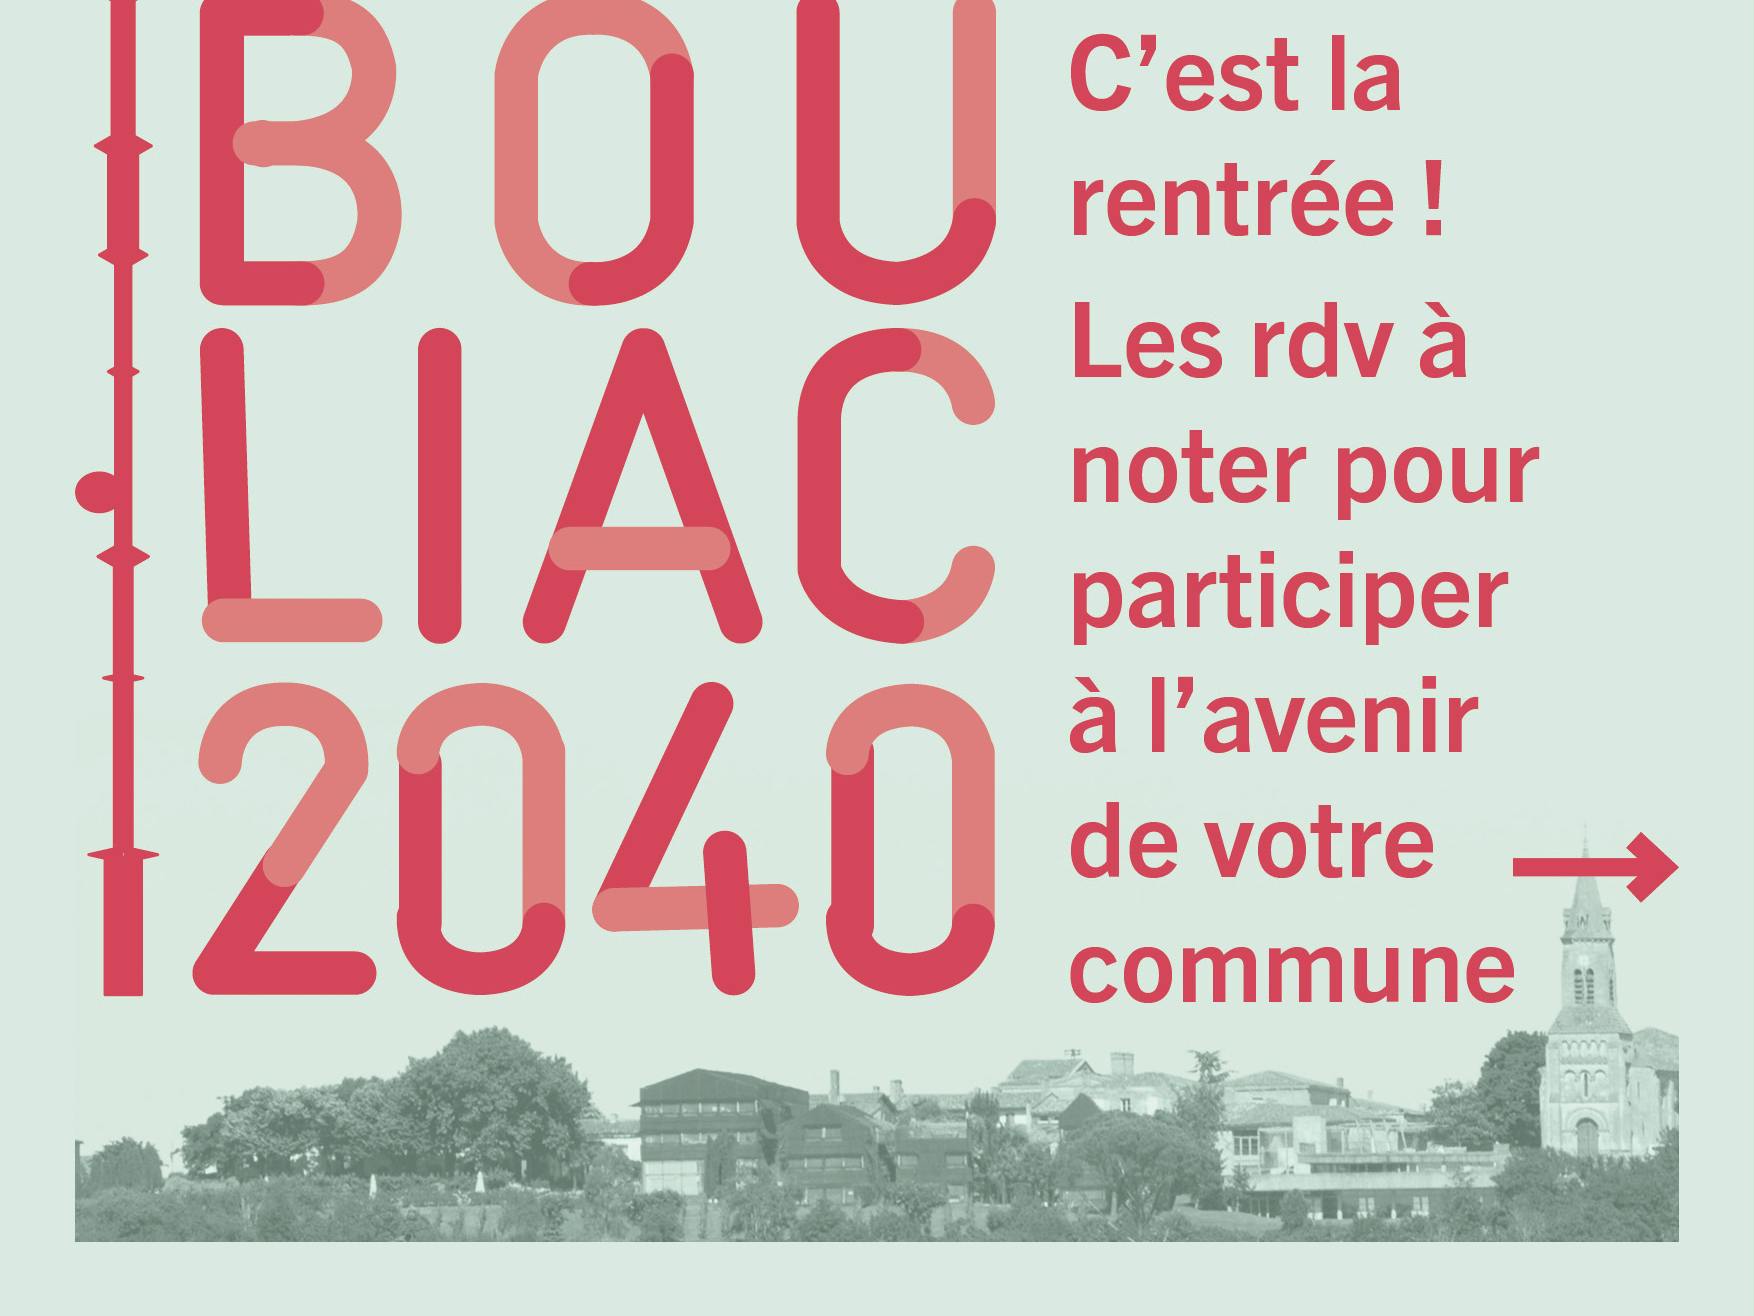 Bouliac 2040 - Participez à l'avenir de votre commune